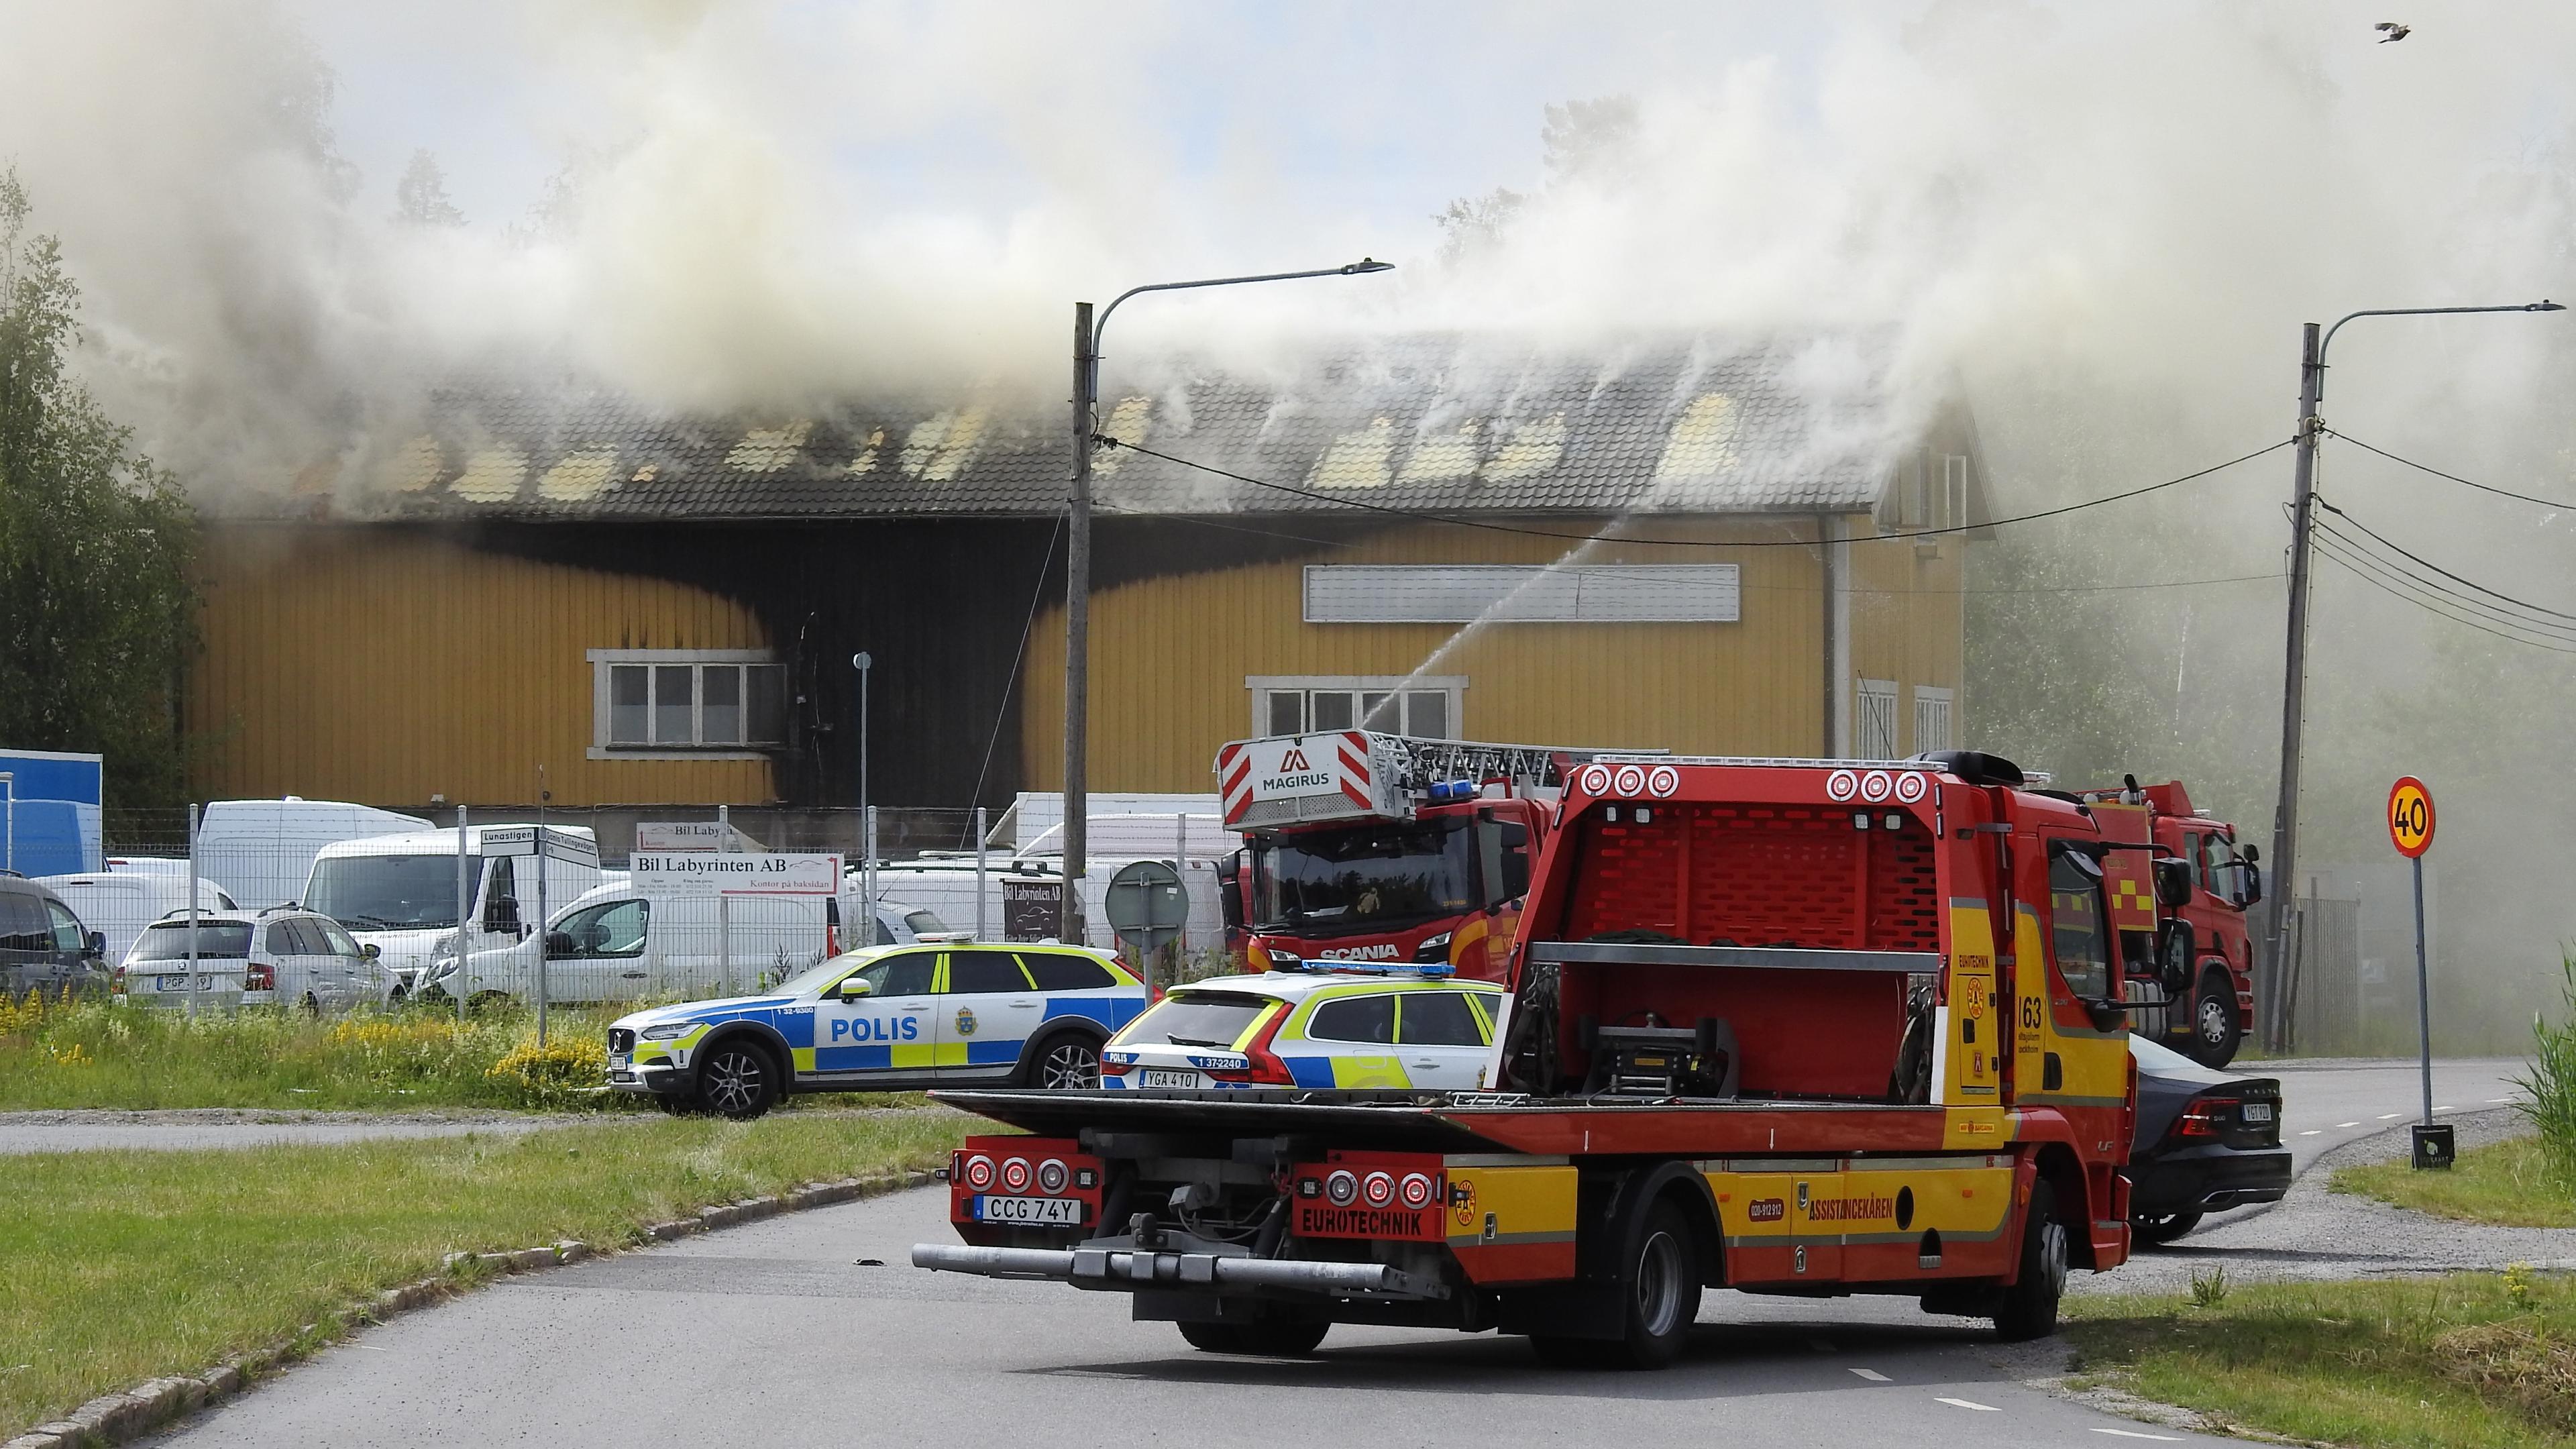 Två personer har förts till sjukhus efter en brand i en industrilokal i Huddinge. Foto: Pontus Stenberg/TT